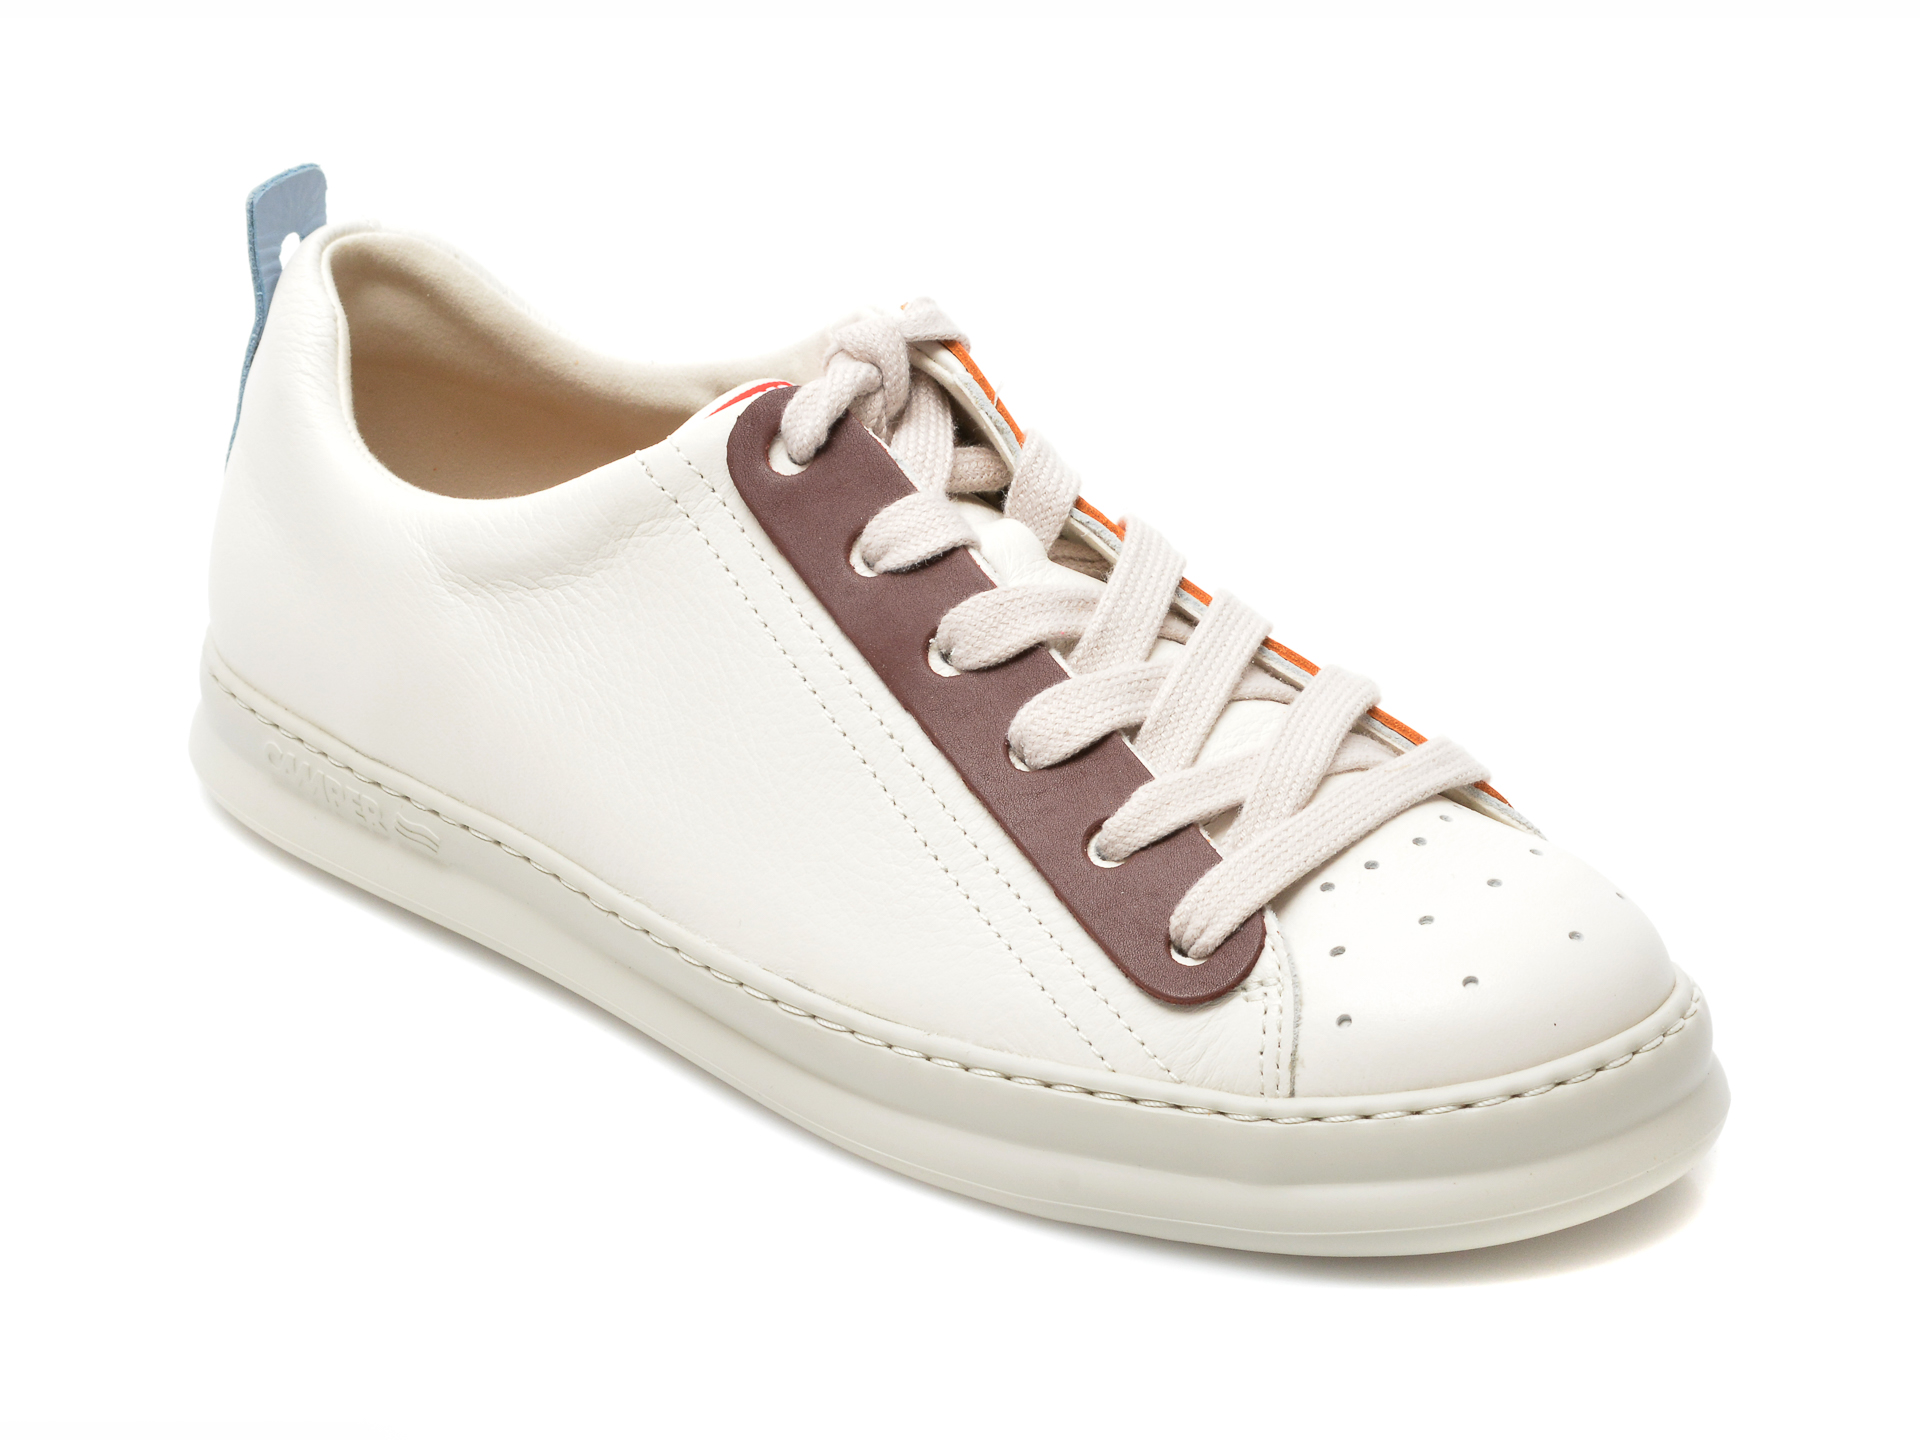 Pantofi sport CAMPER albi, K100805, din piele naturala Camper imagine 2022 reducere